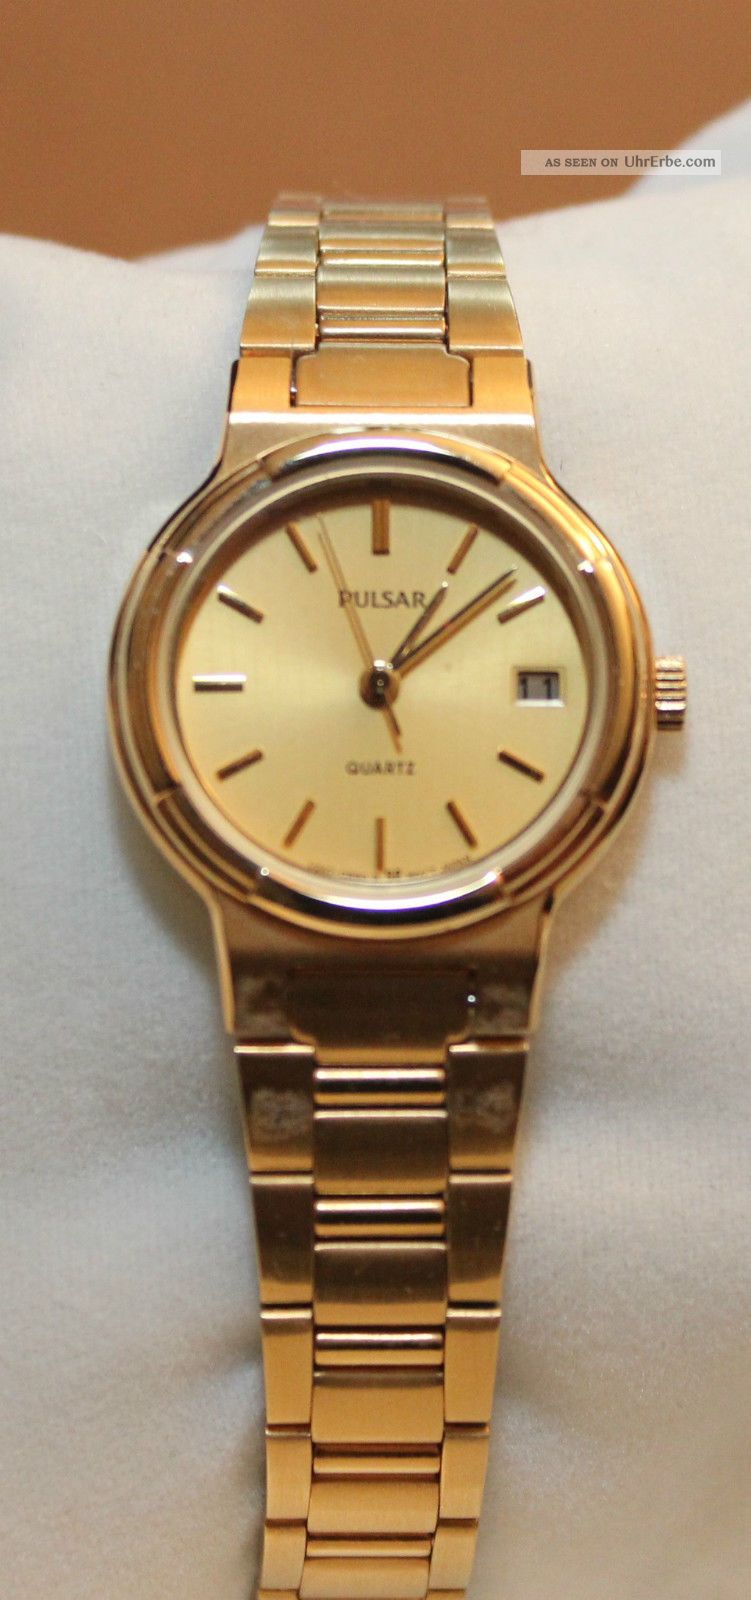 Pulsar,  Damenuhr Armbanduhr Ungetragen Mit Box Armbanduhren Bild